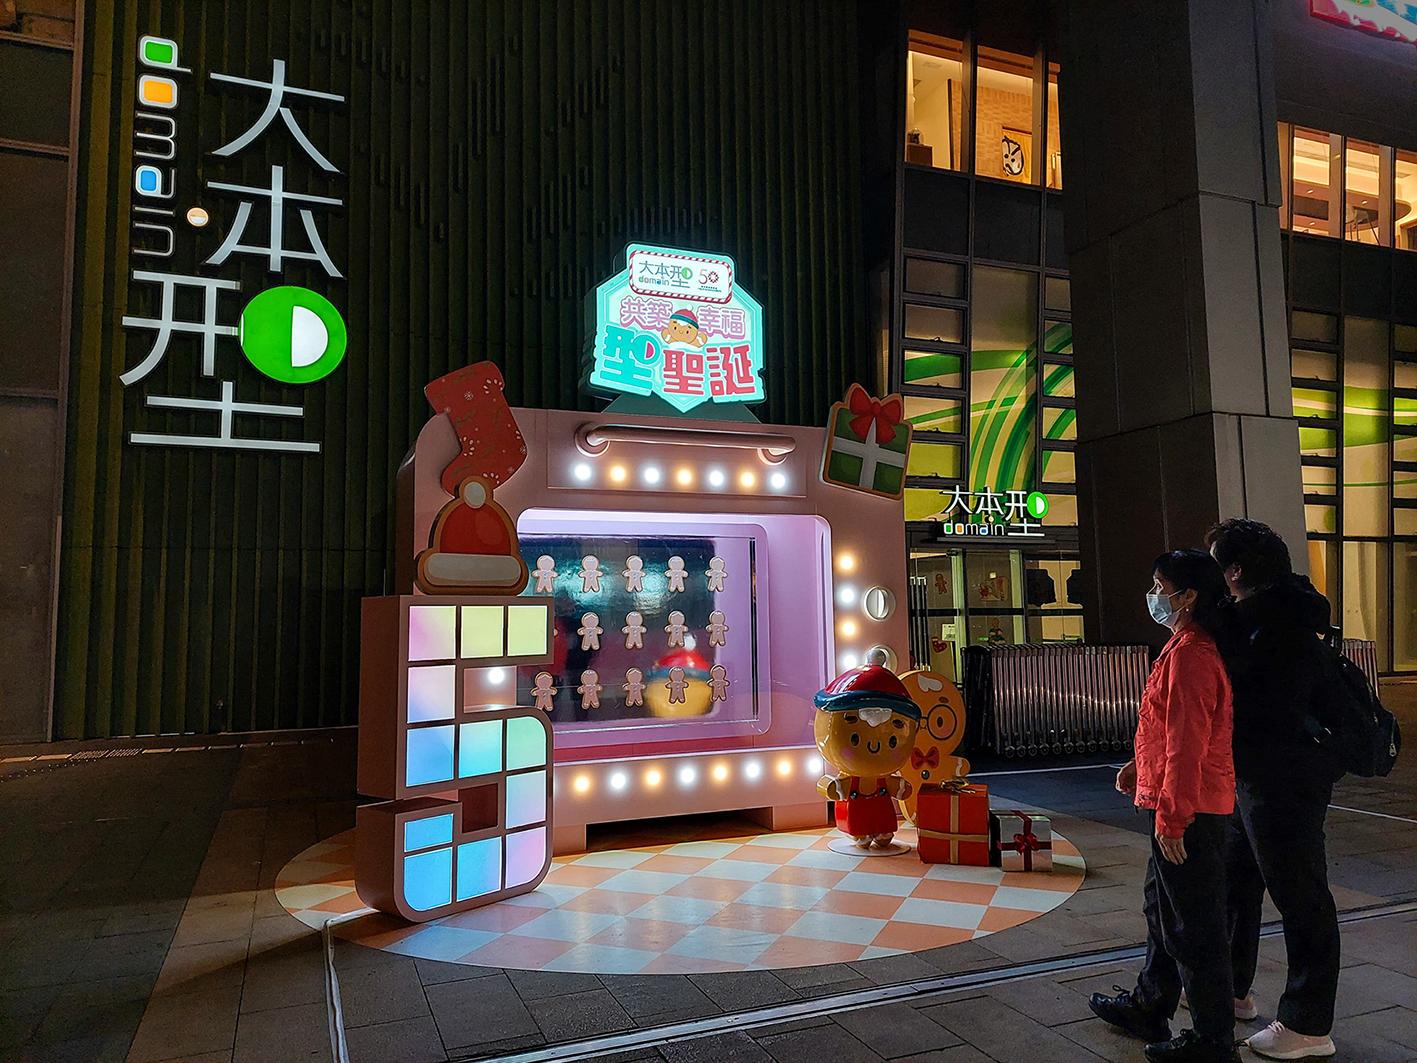 香港房屋委员会（房委会）于辖下多个商场举办圣诞节推广及夜缤纷活动，与市民欢度圣诞。图示房委会位于油塘的区域商场大本型于露天广场以姜饼人家族为主题的圣诞装饰。